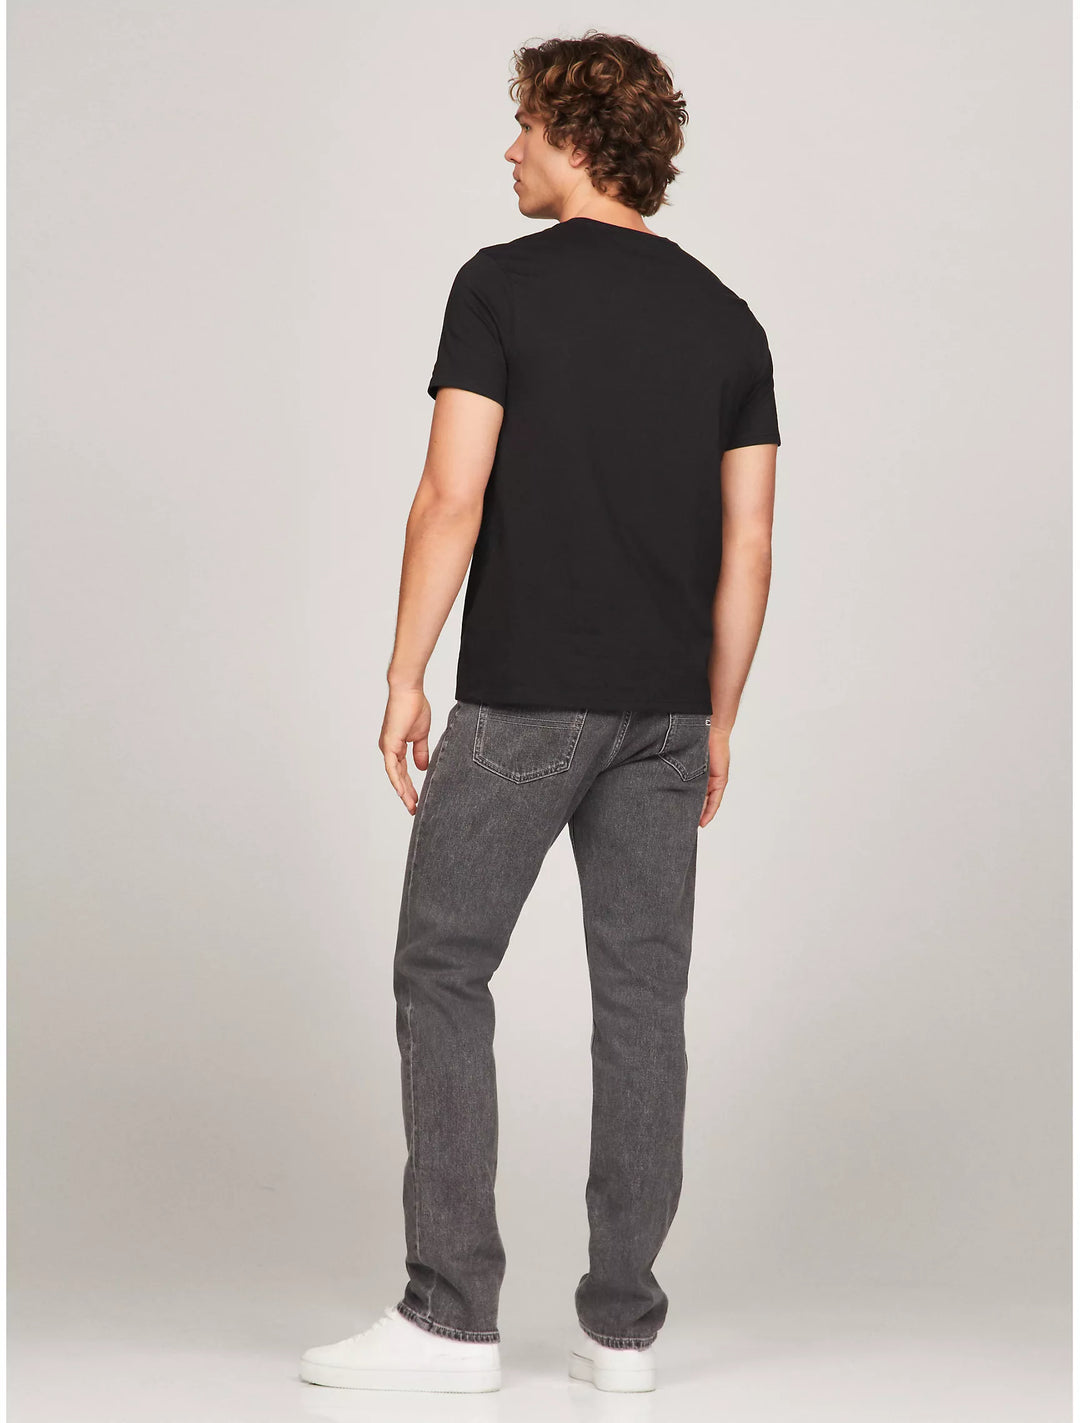 Tommy Hilfiger Mens R-N T-Shirt AT-SB-78JA480 (Black)